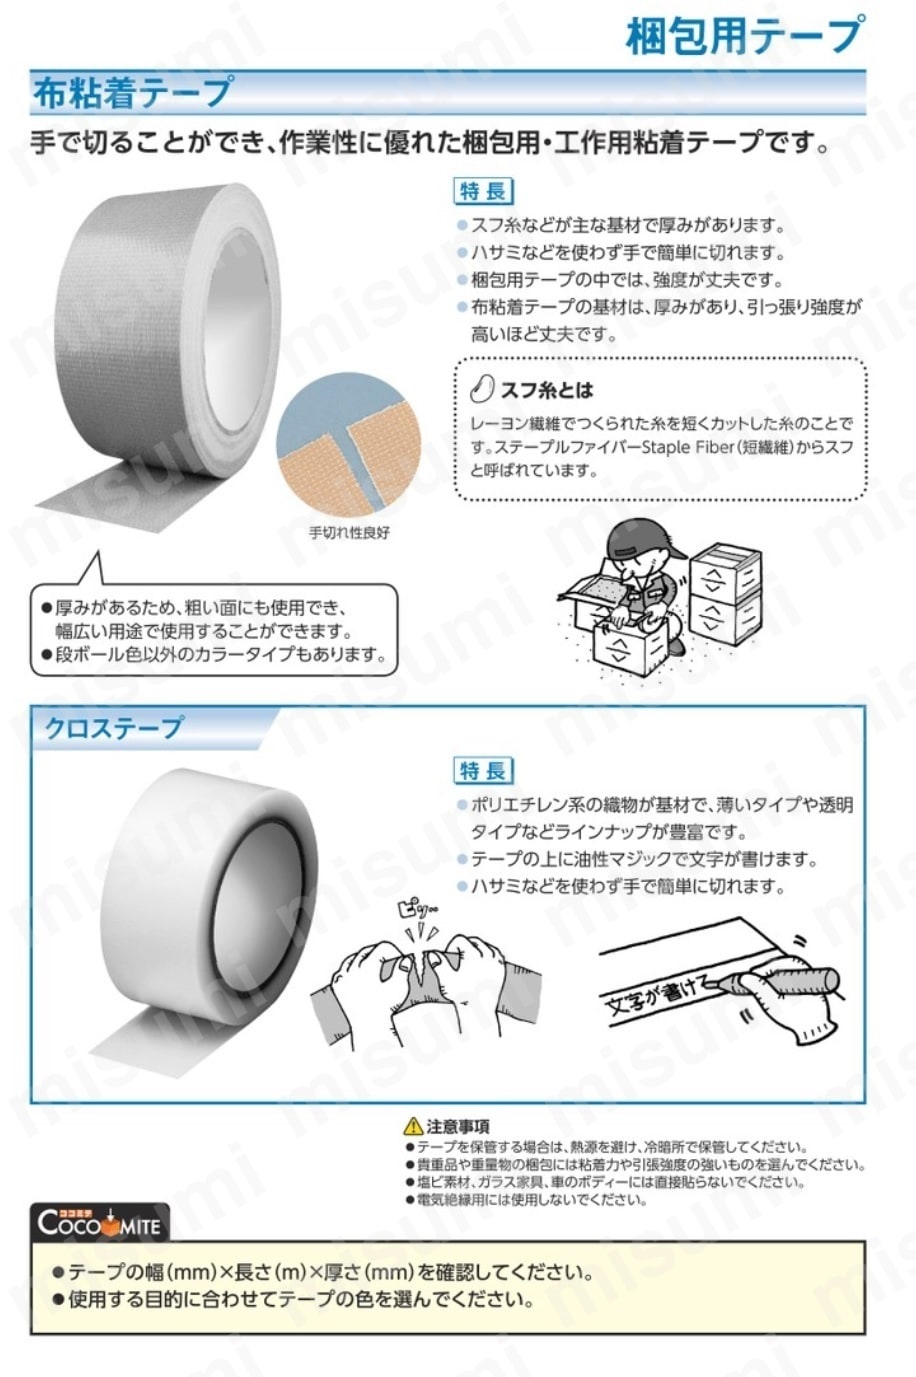 オカモト 布テープ NO111カラー 白 50ミリ シュリンク包装 オカモト MISUMI(ミスミ)